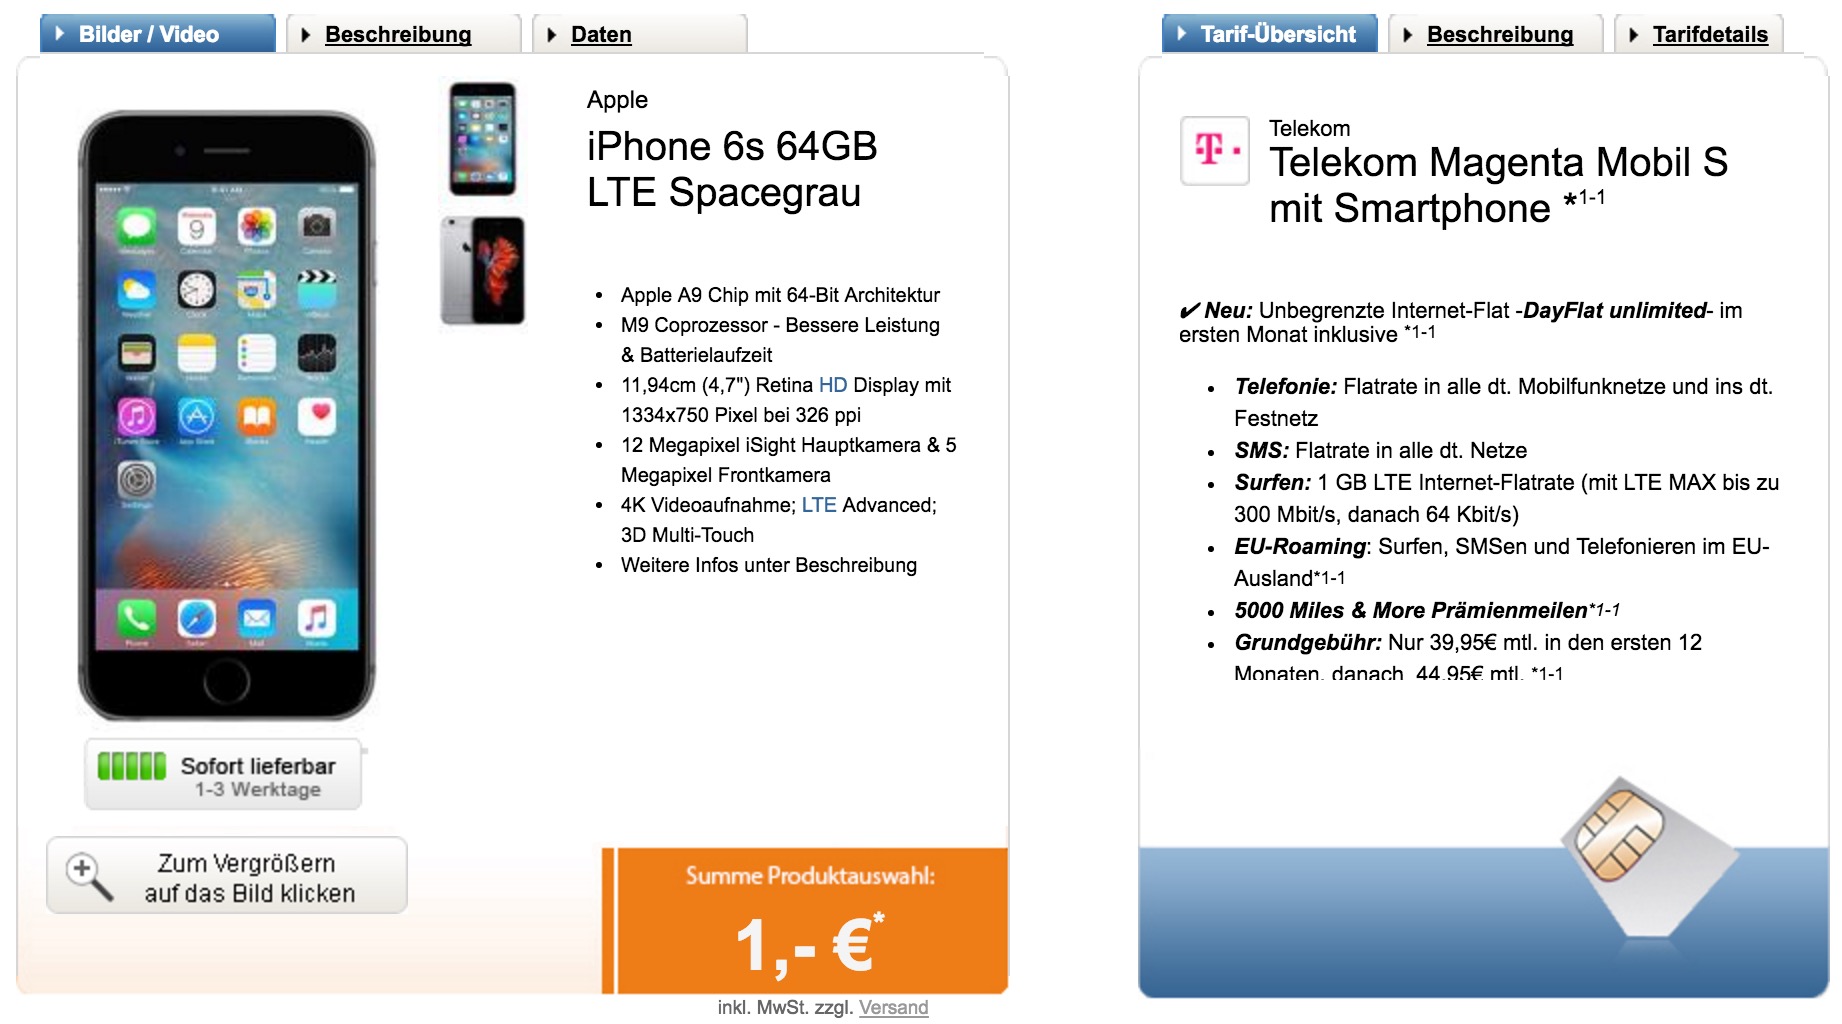 Telekom Magenta Mobil S + Apple iPhone 6s (64GB) für nur effektiv 12,28 Euro monatlich